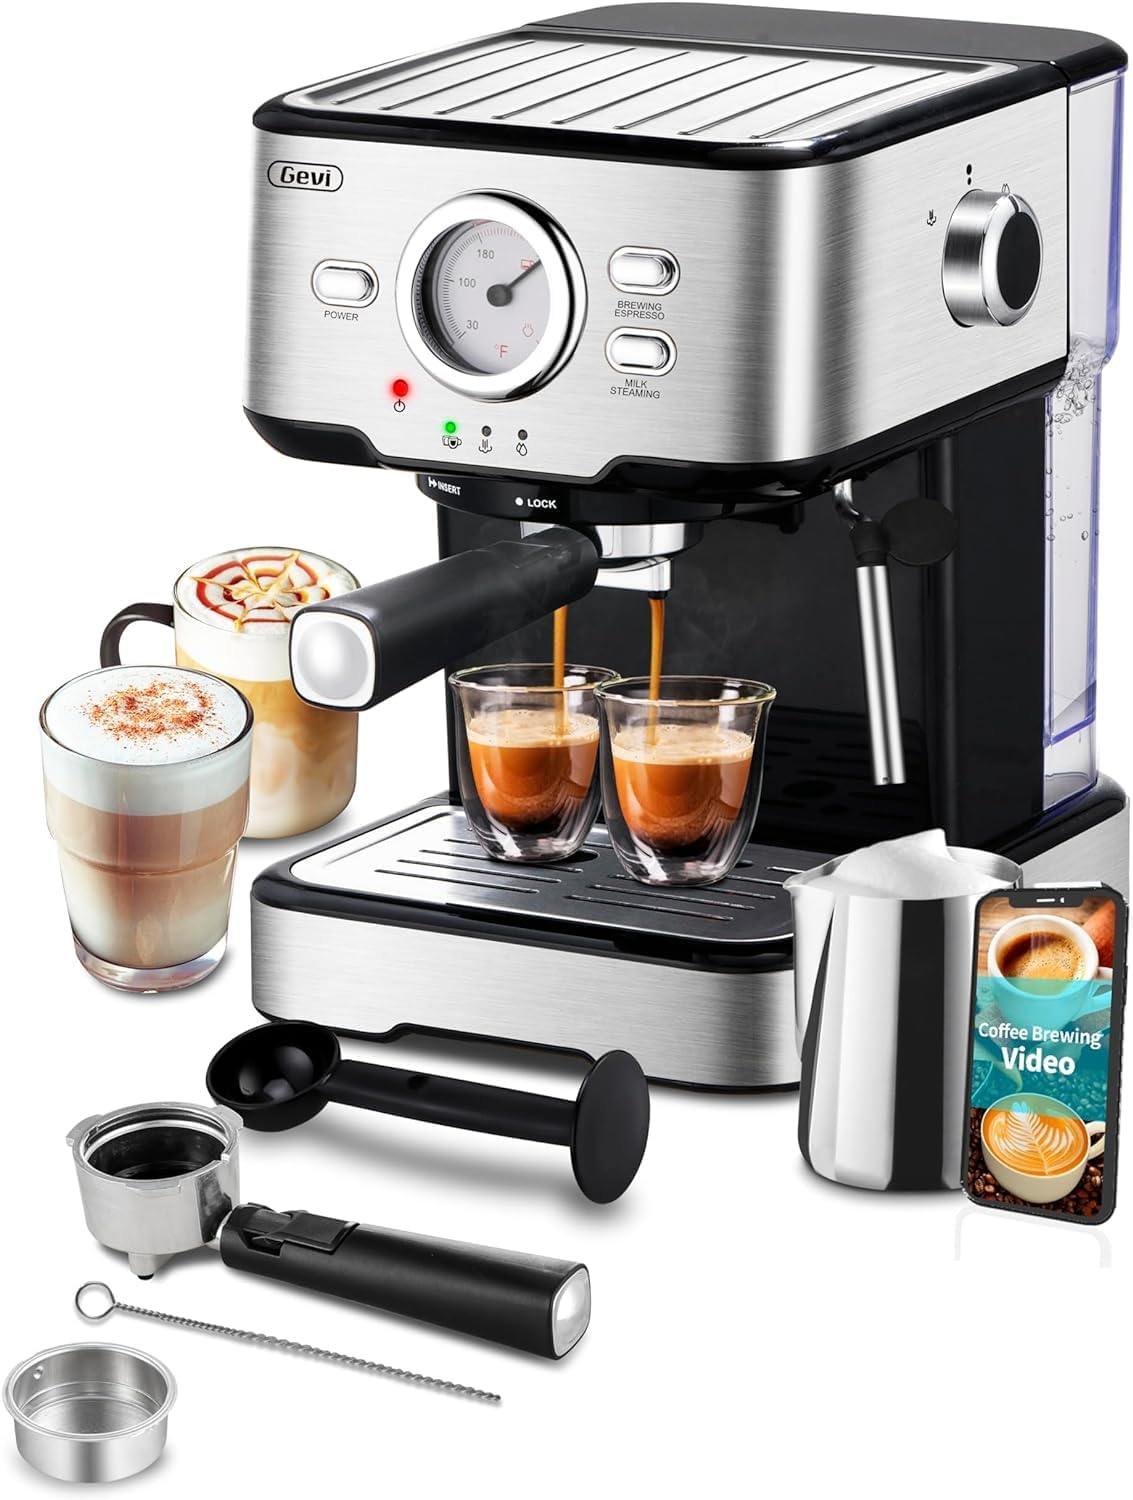 Gevi Coffee Servers Espresso Machine Review